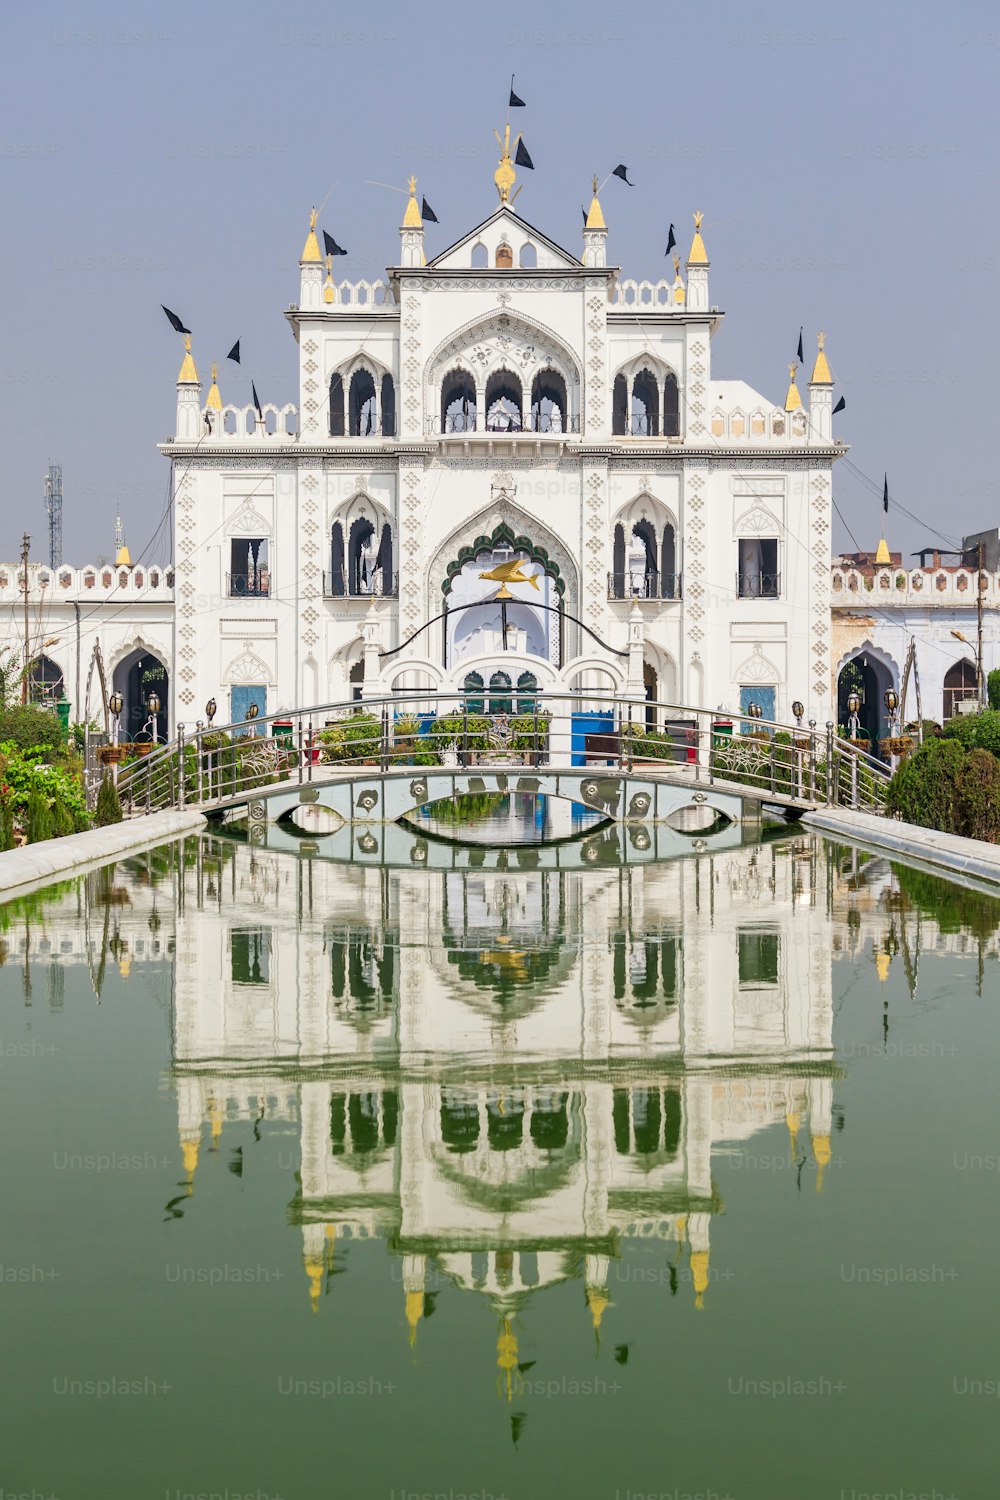 Chota Imambara, noto anche come Hussainabad Imambara è un imponente monumento situato nella città di Lucknow nell'Uttar Pradesh, in India